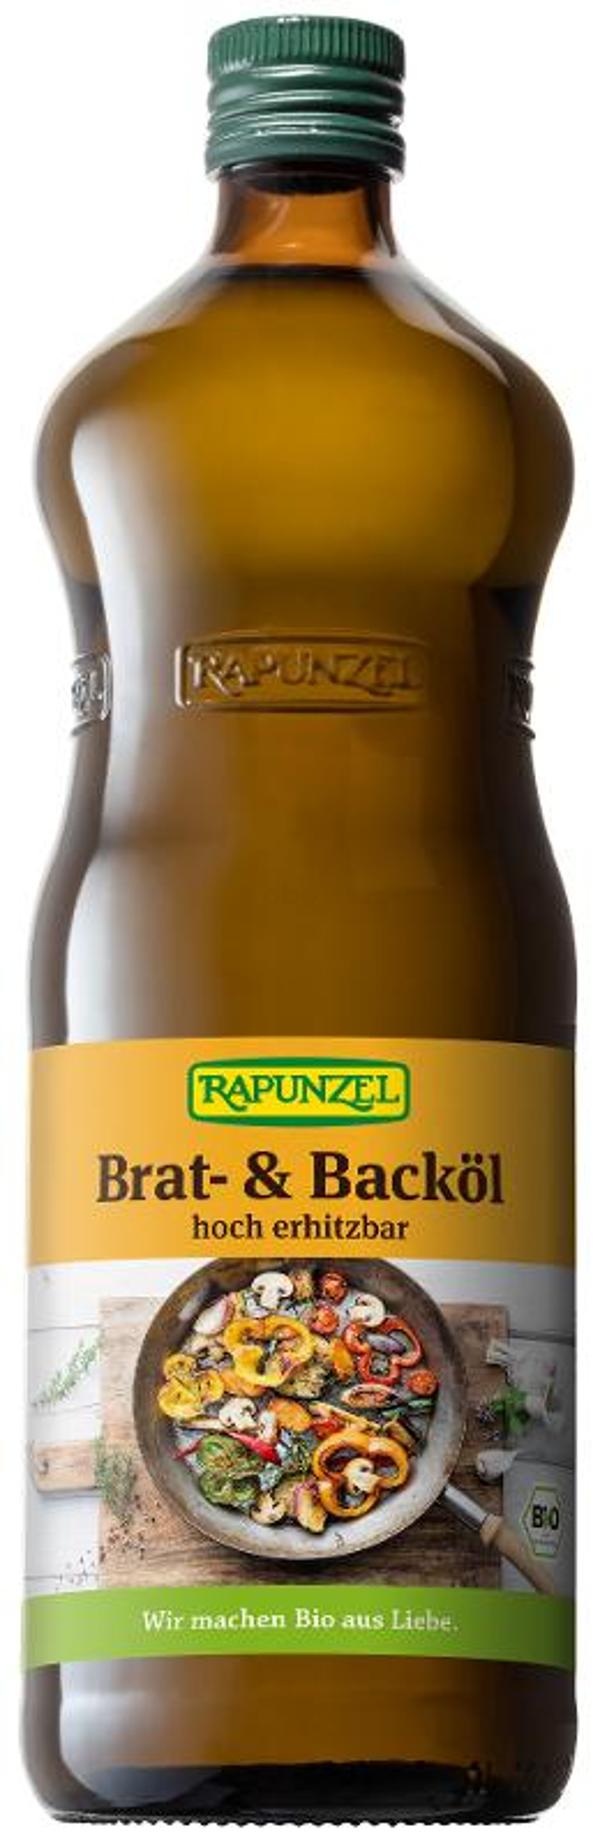 Produktfoto zu Rapunzel Brat- und Backöl - 1l